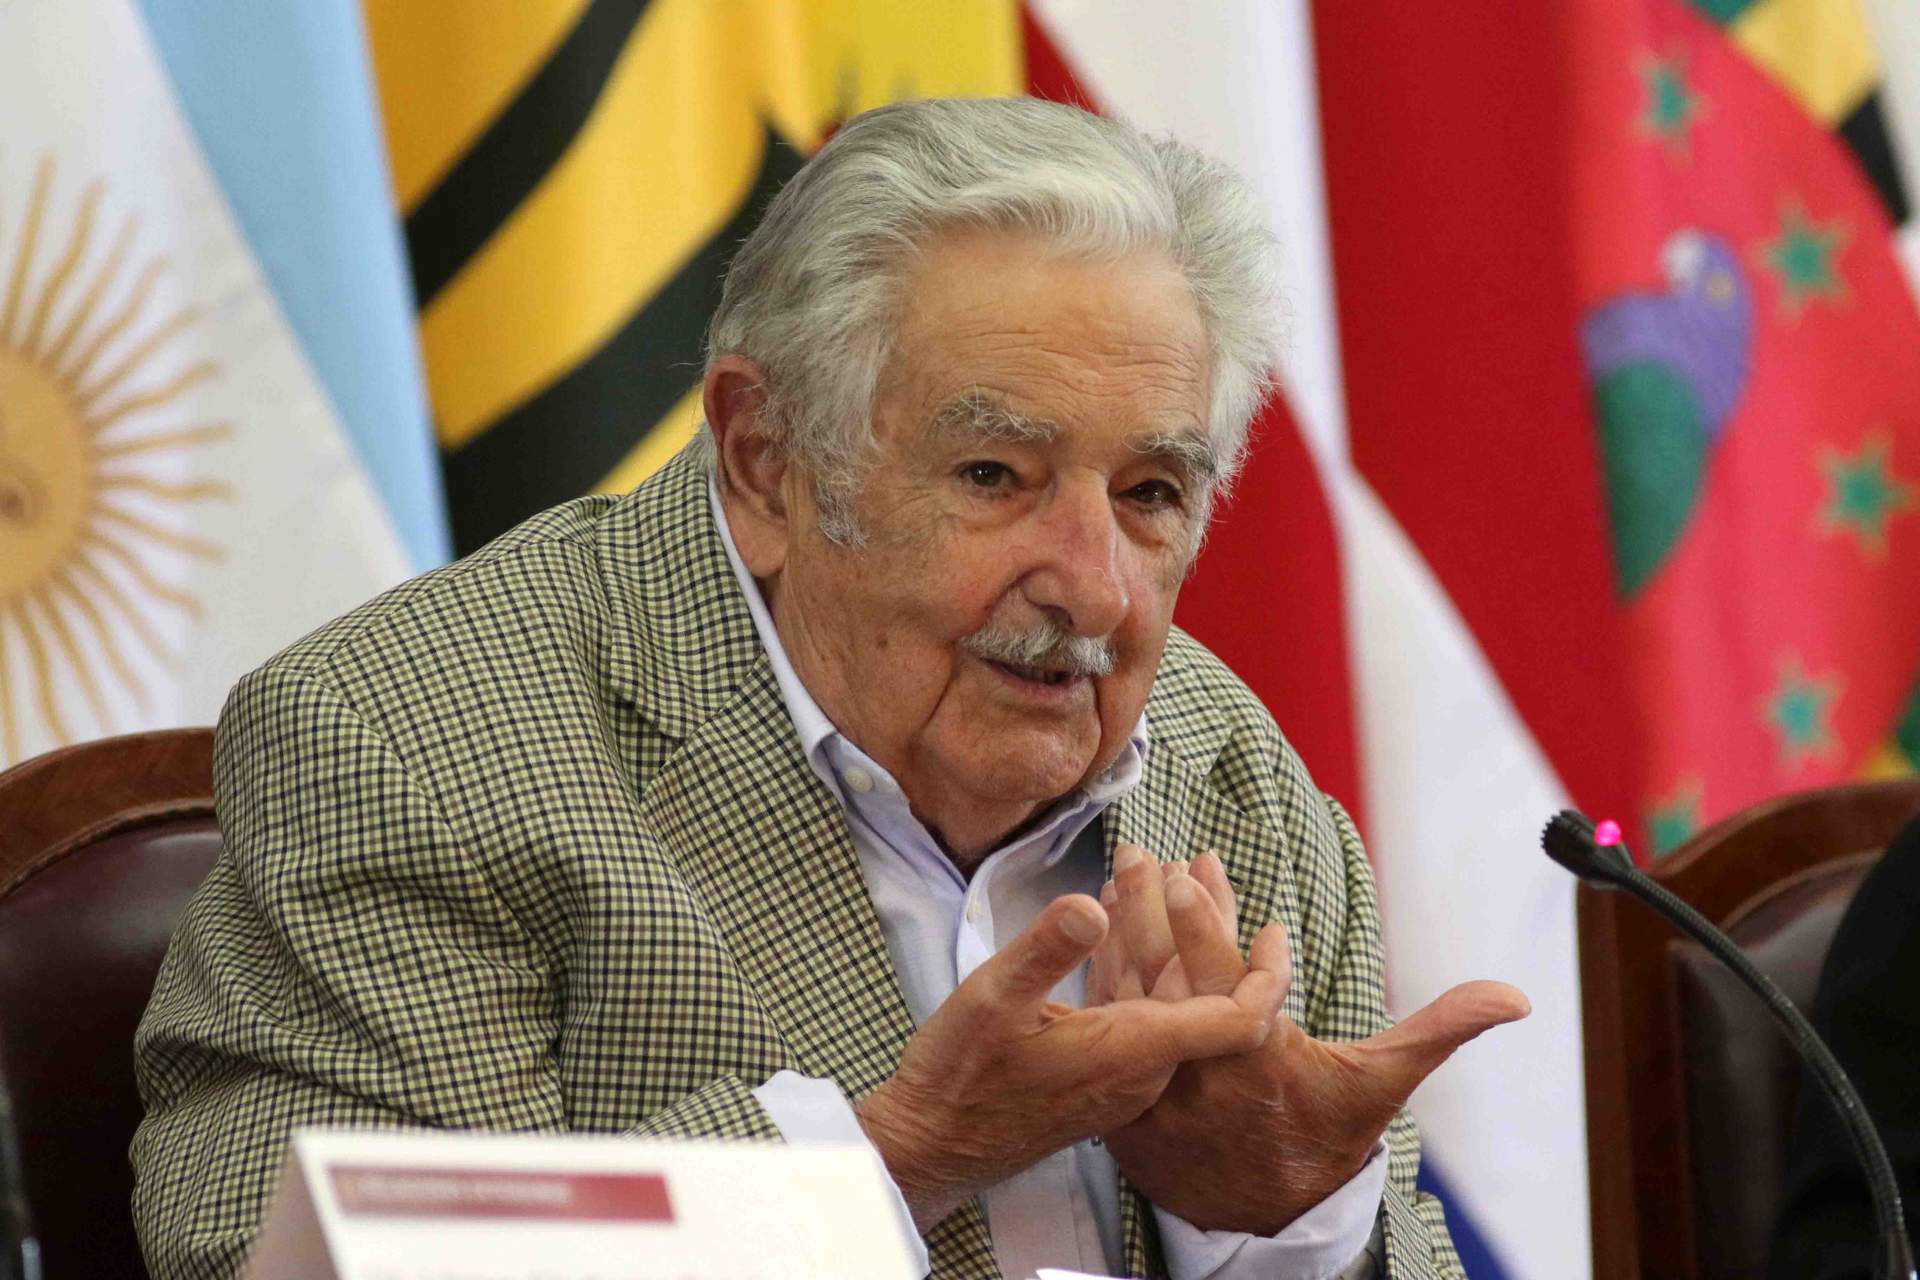 El expresidente de Uruguay José Mujica apoya a Díaz y su esfuerzo por aunar al movimiento progresista en torno a Sumar